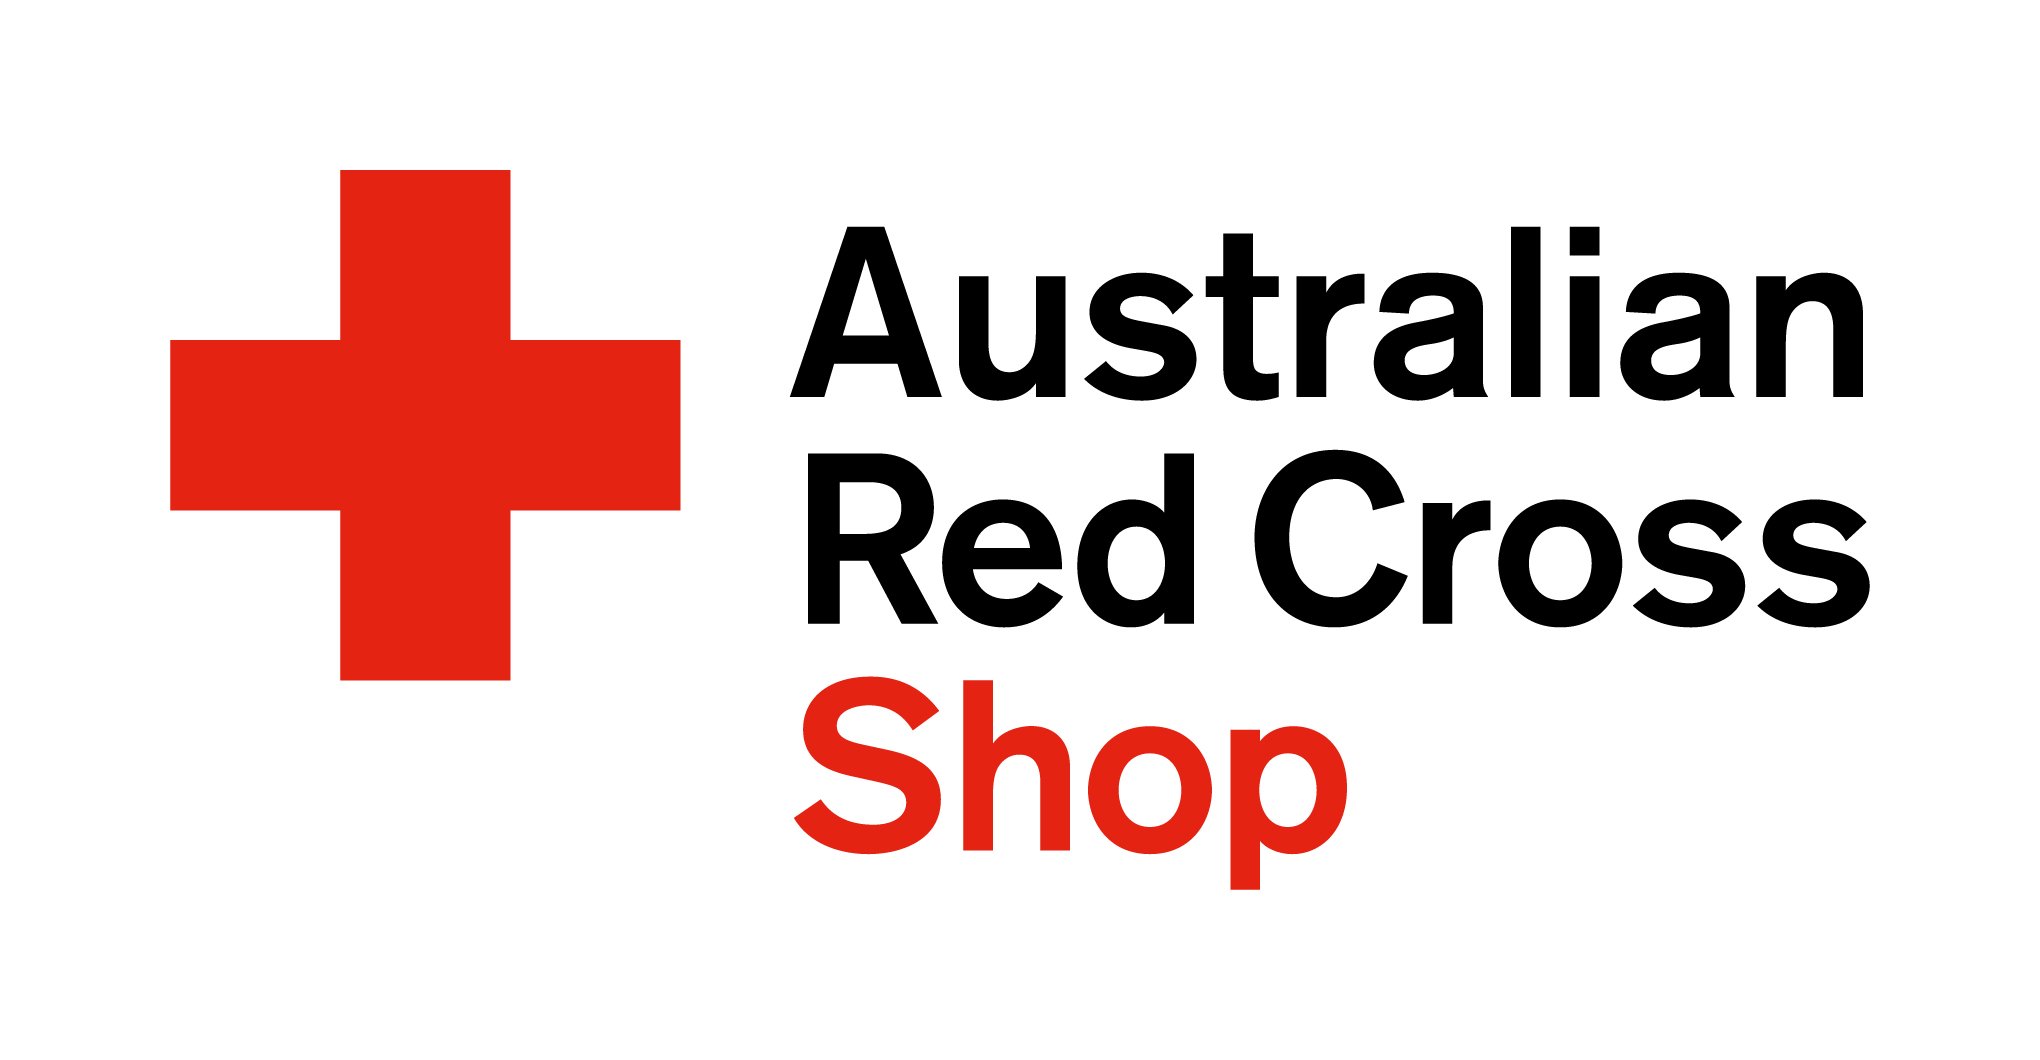 Australian Red Cross Australian Red Cross Shop